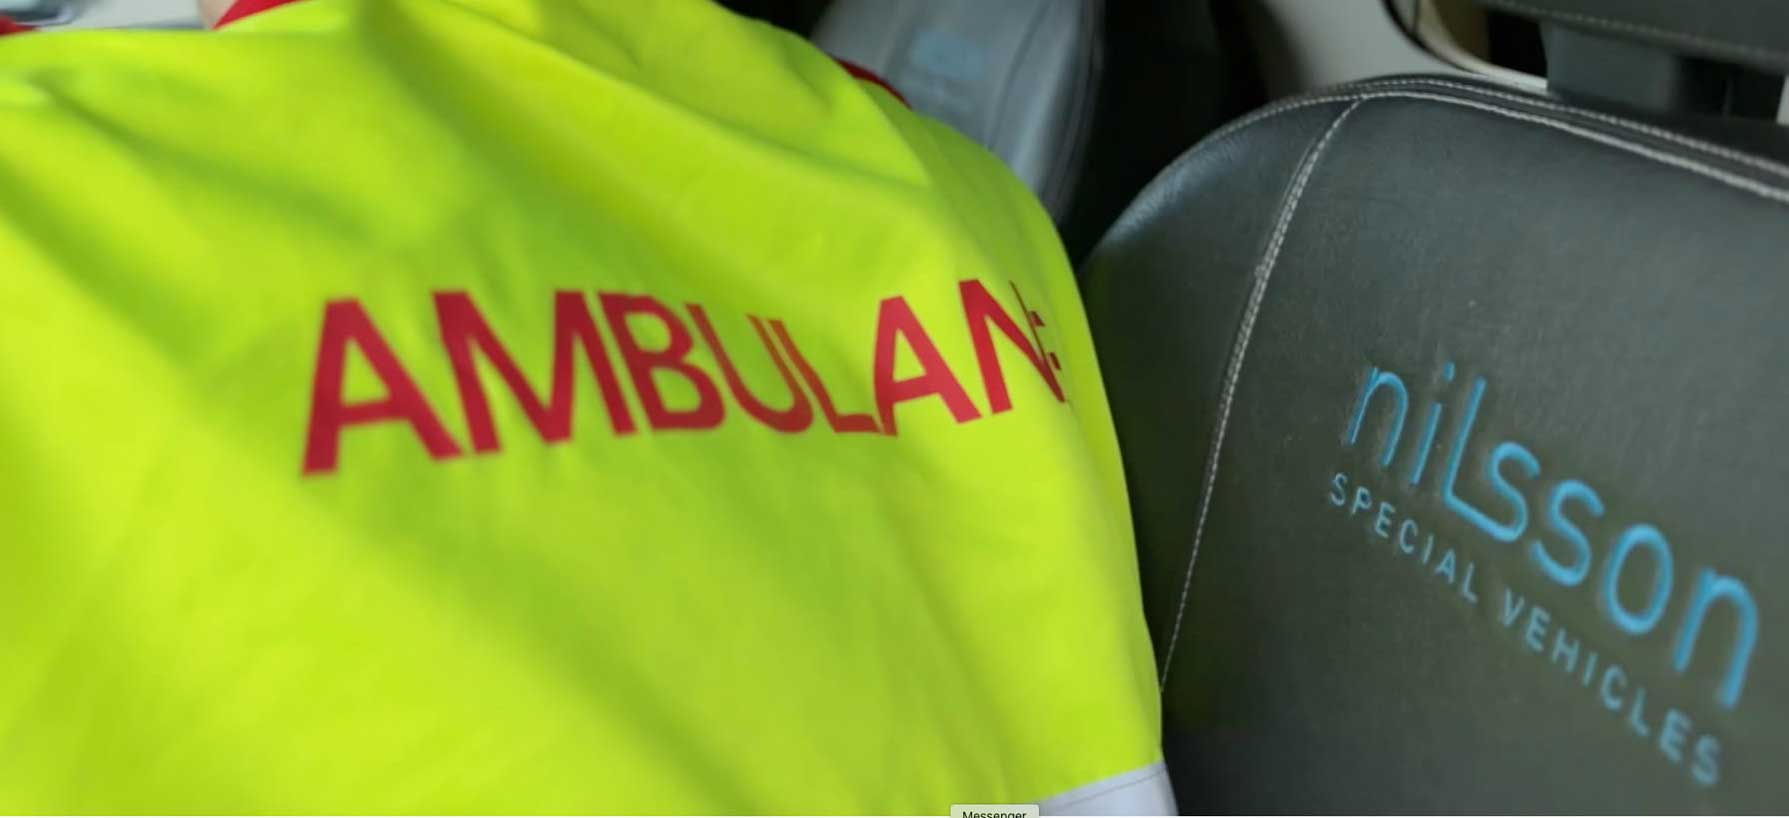 Det innføres forbedret ordning for veiledning av sine ambulanselærlinger. Illustrasjonsfoto: Jørn Finsrud.